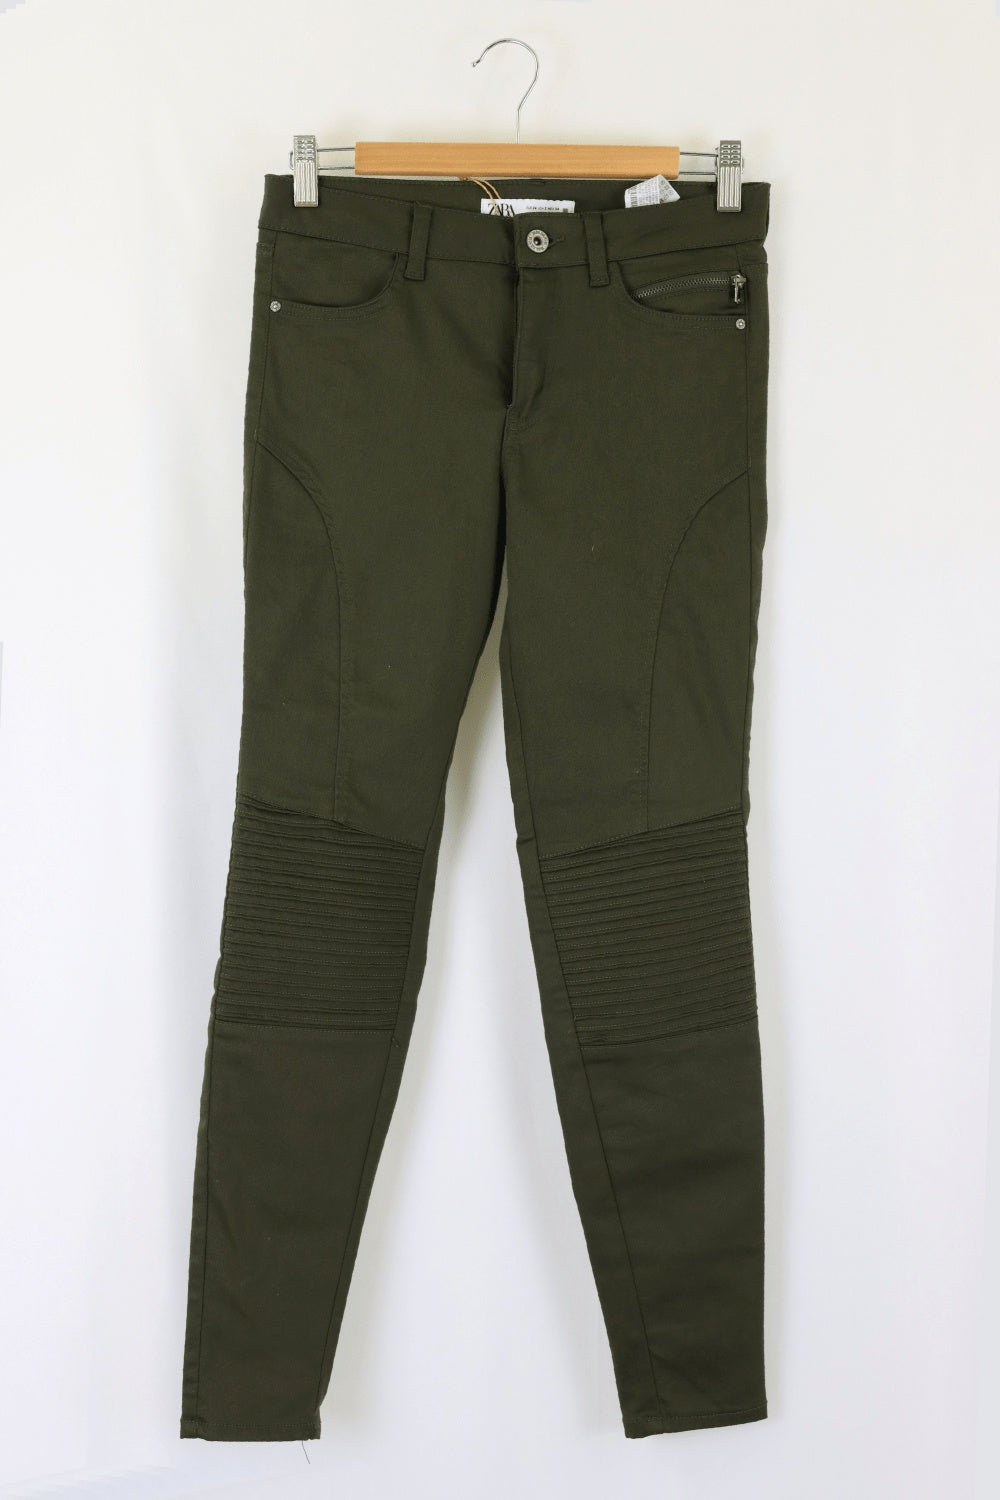 Zara Green Jeans 6